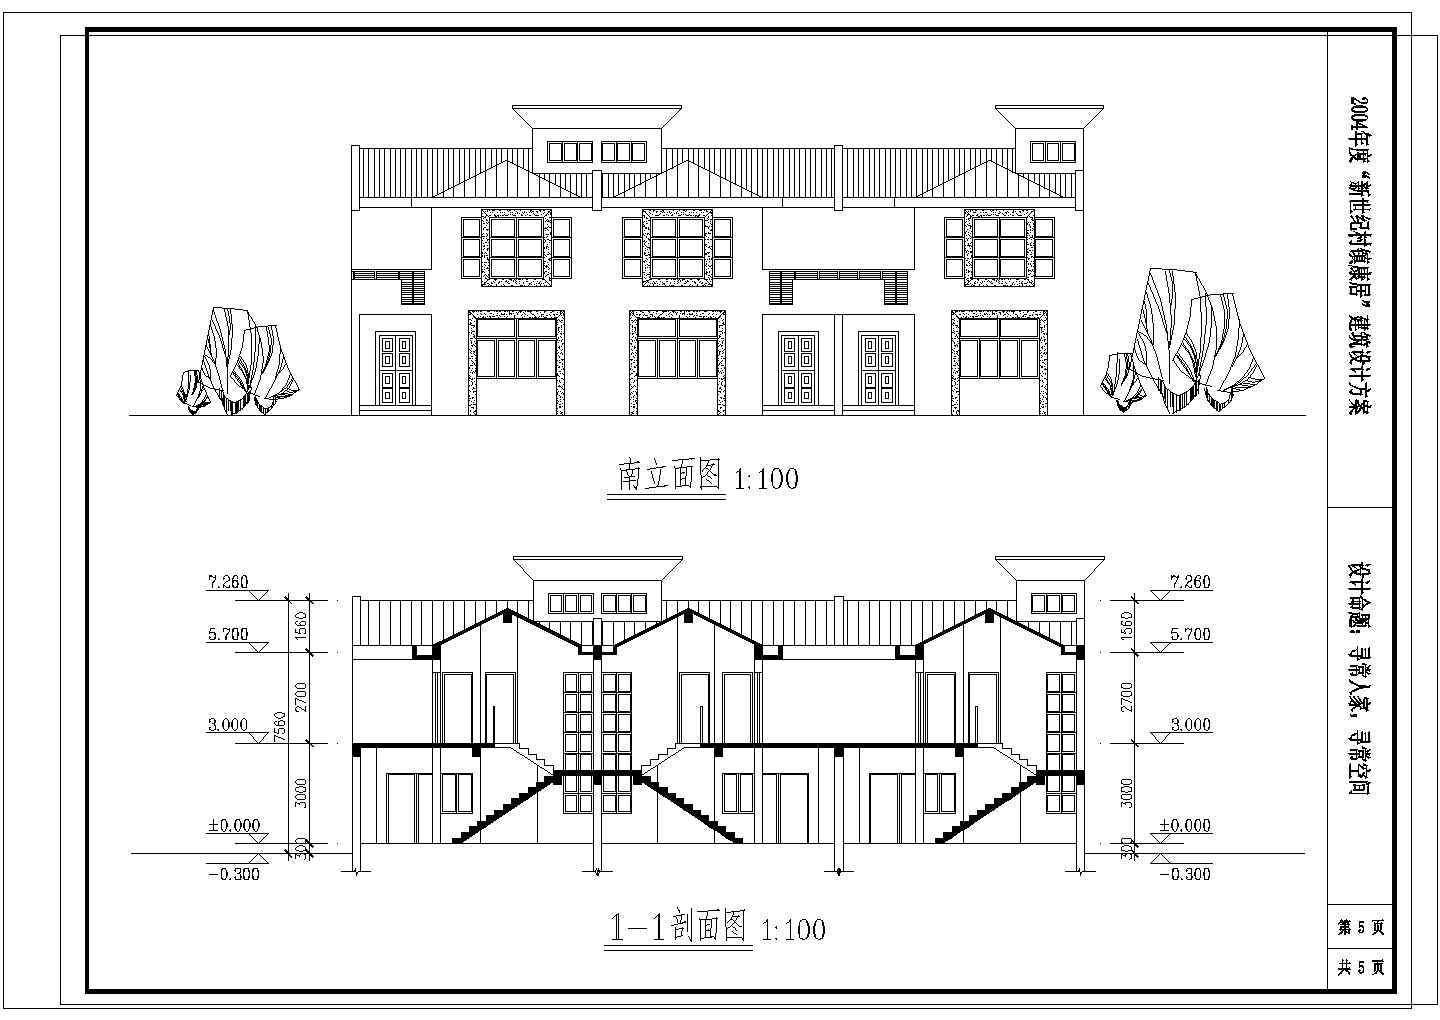 一套简单的淮安市城市建筑设计院建筑图纸